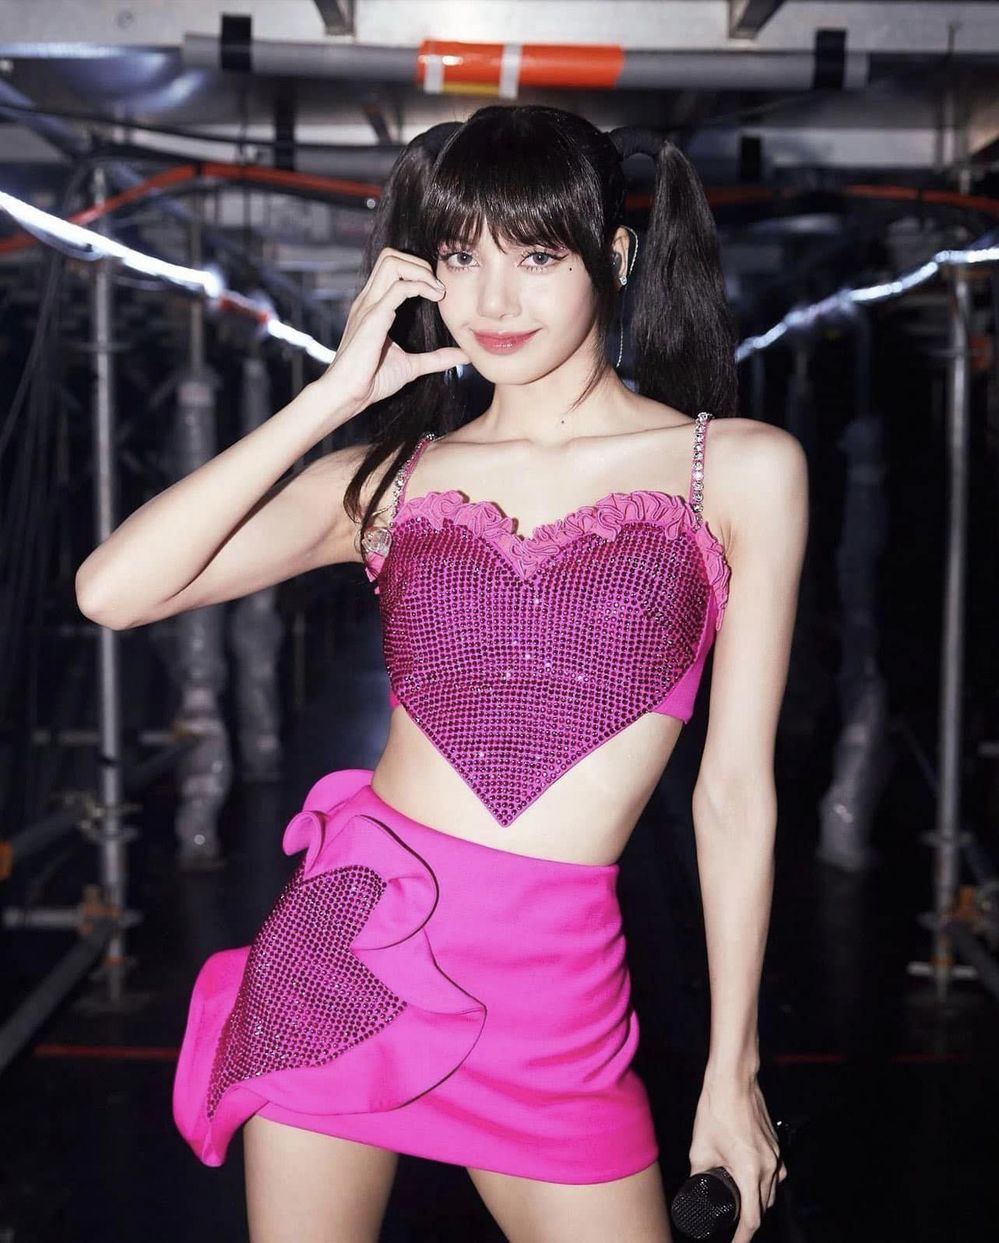  
Trong concert BORN PINK, Lisa nhiệt tình lăng xê outfit hồng rực rỡ. (Ảnh: Instagram lalalalisa_m)